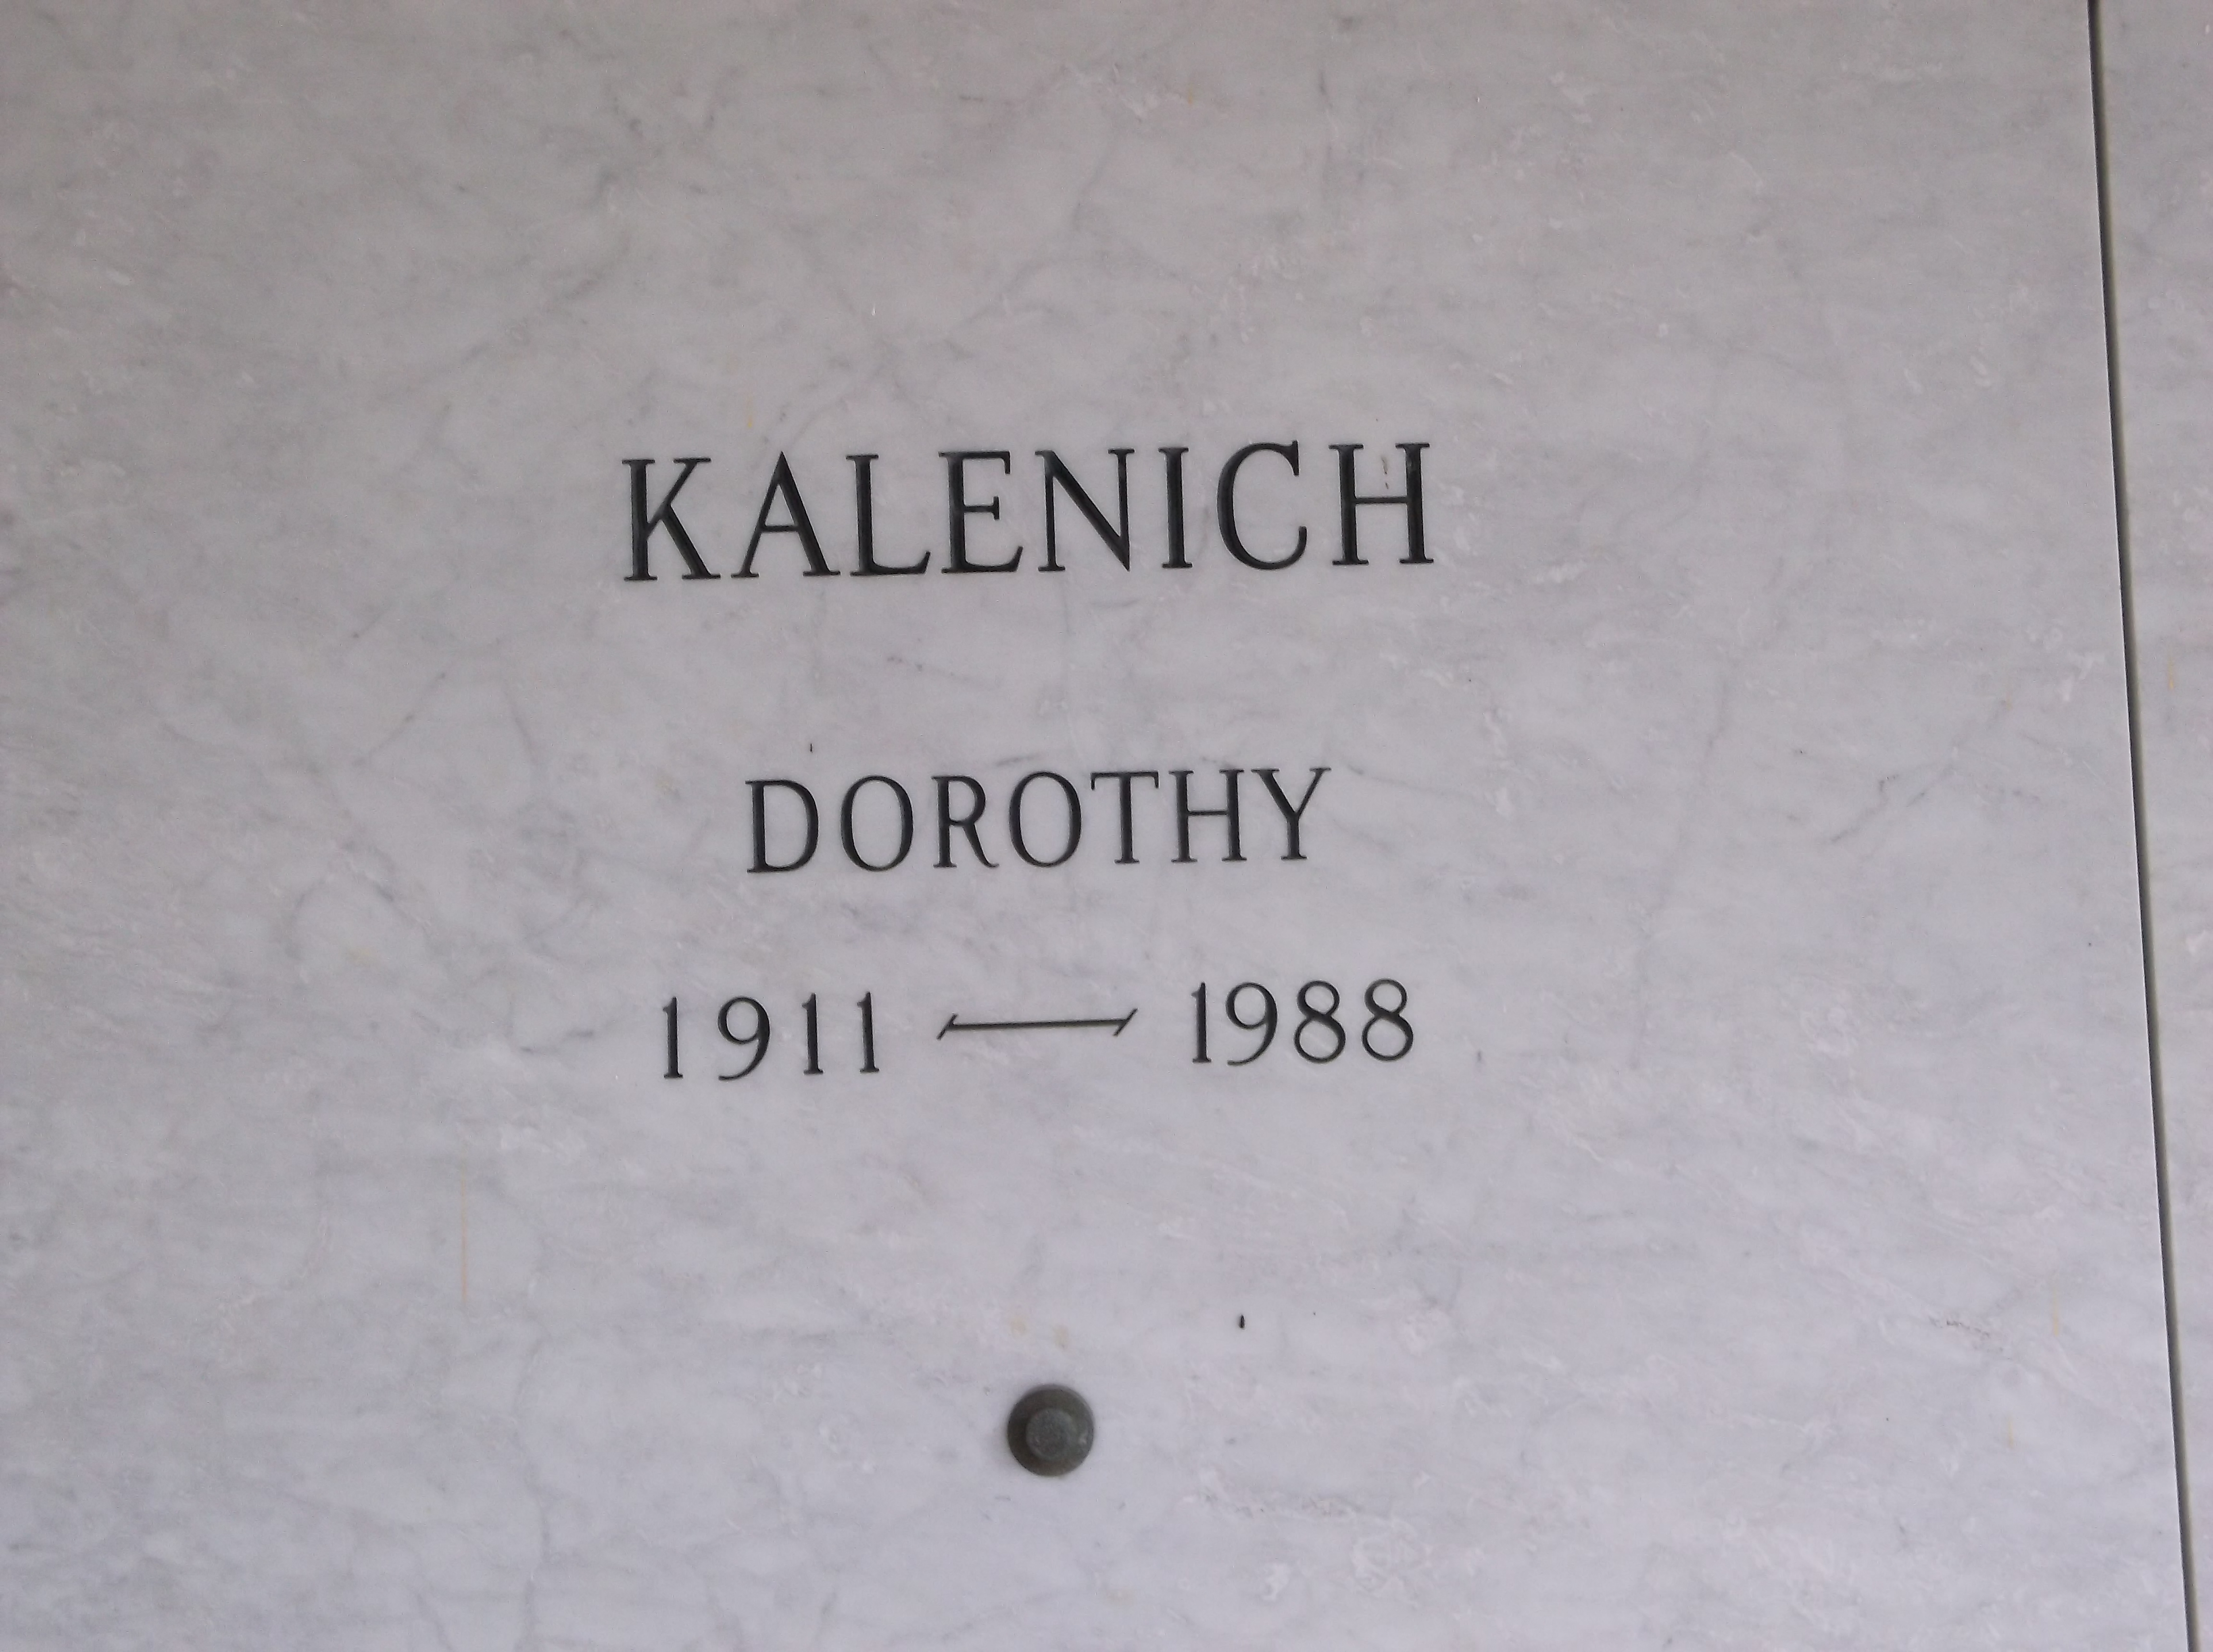 Dorothy Kalenich